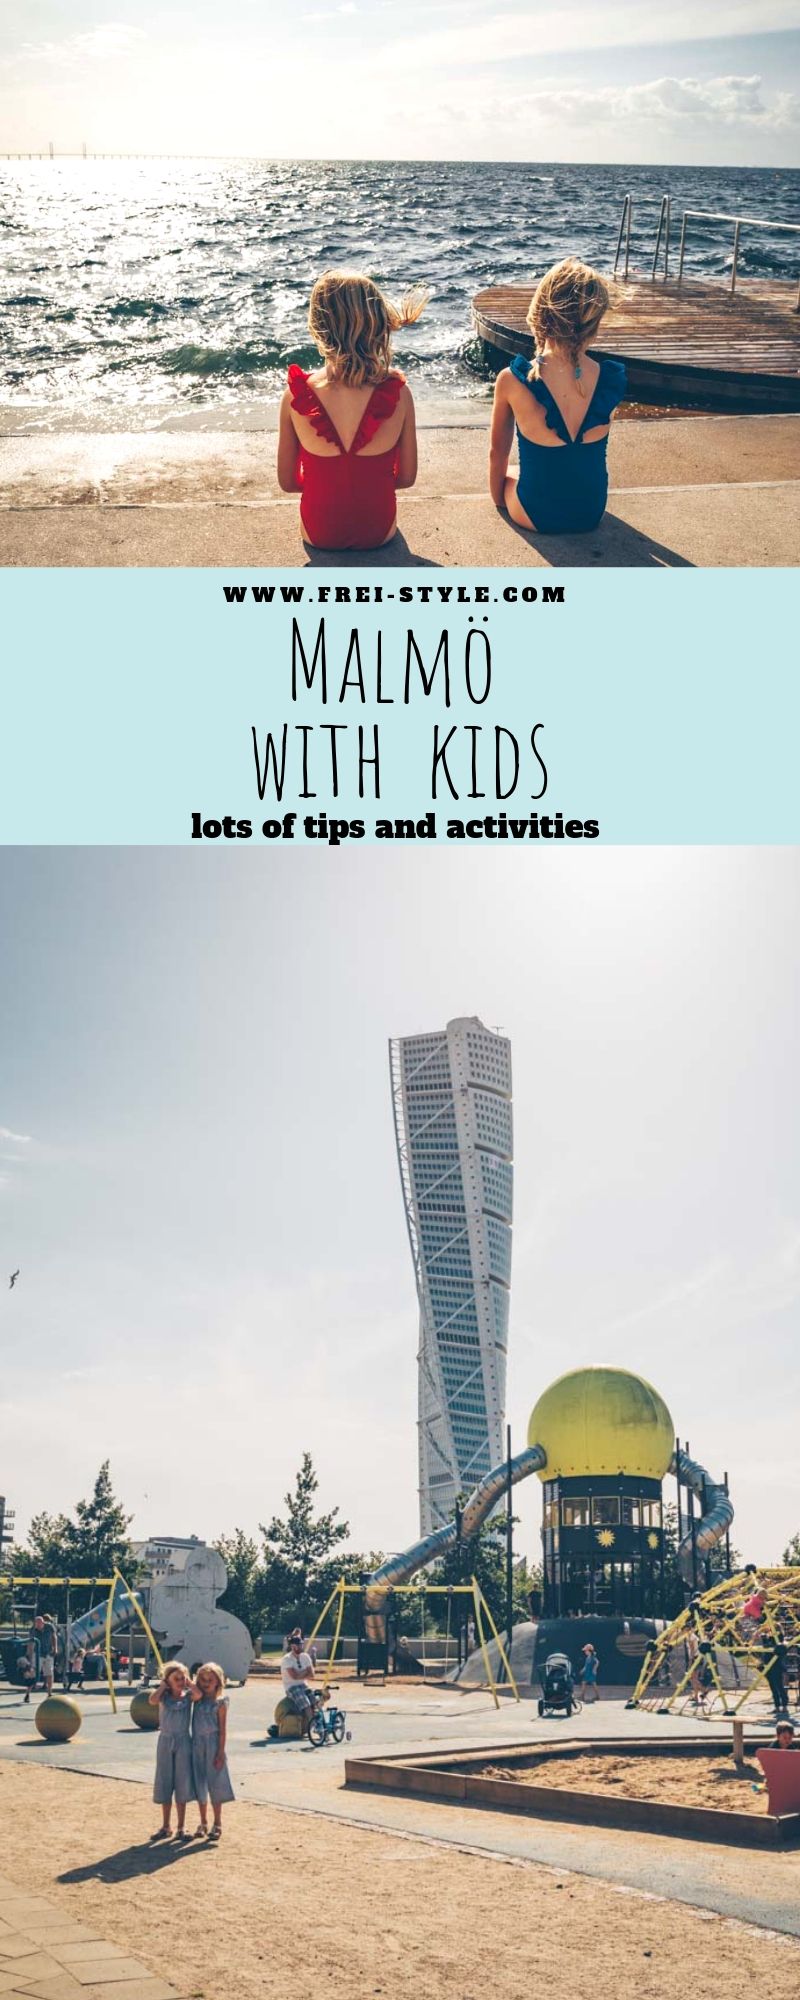 Malmö with kids